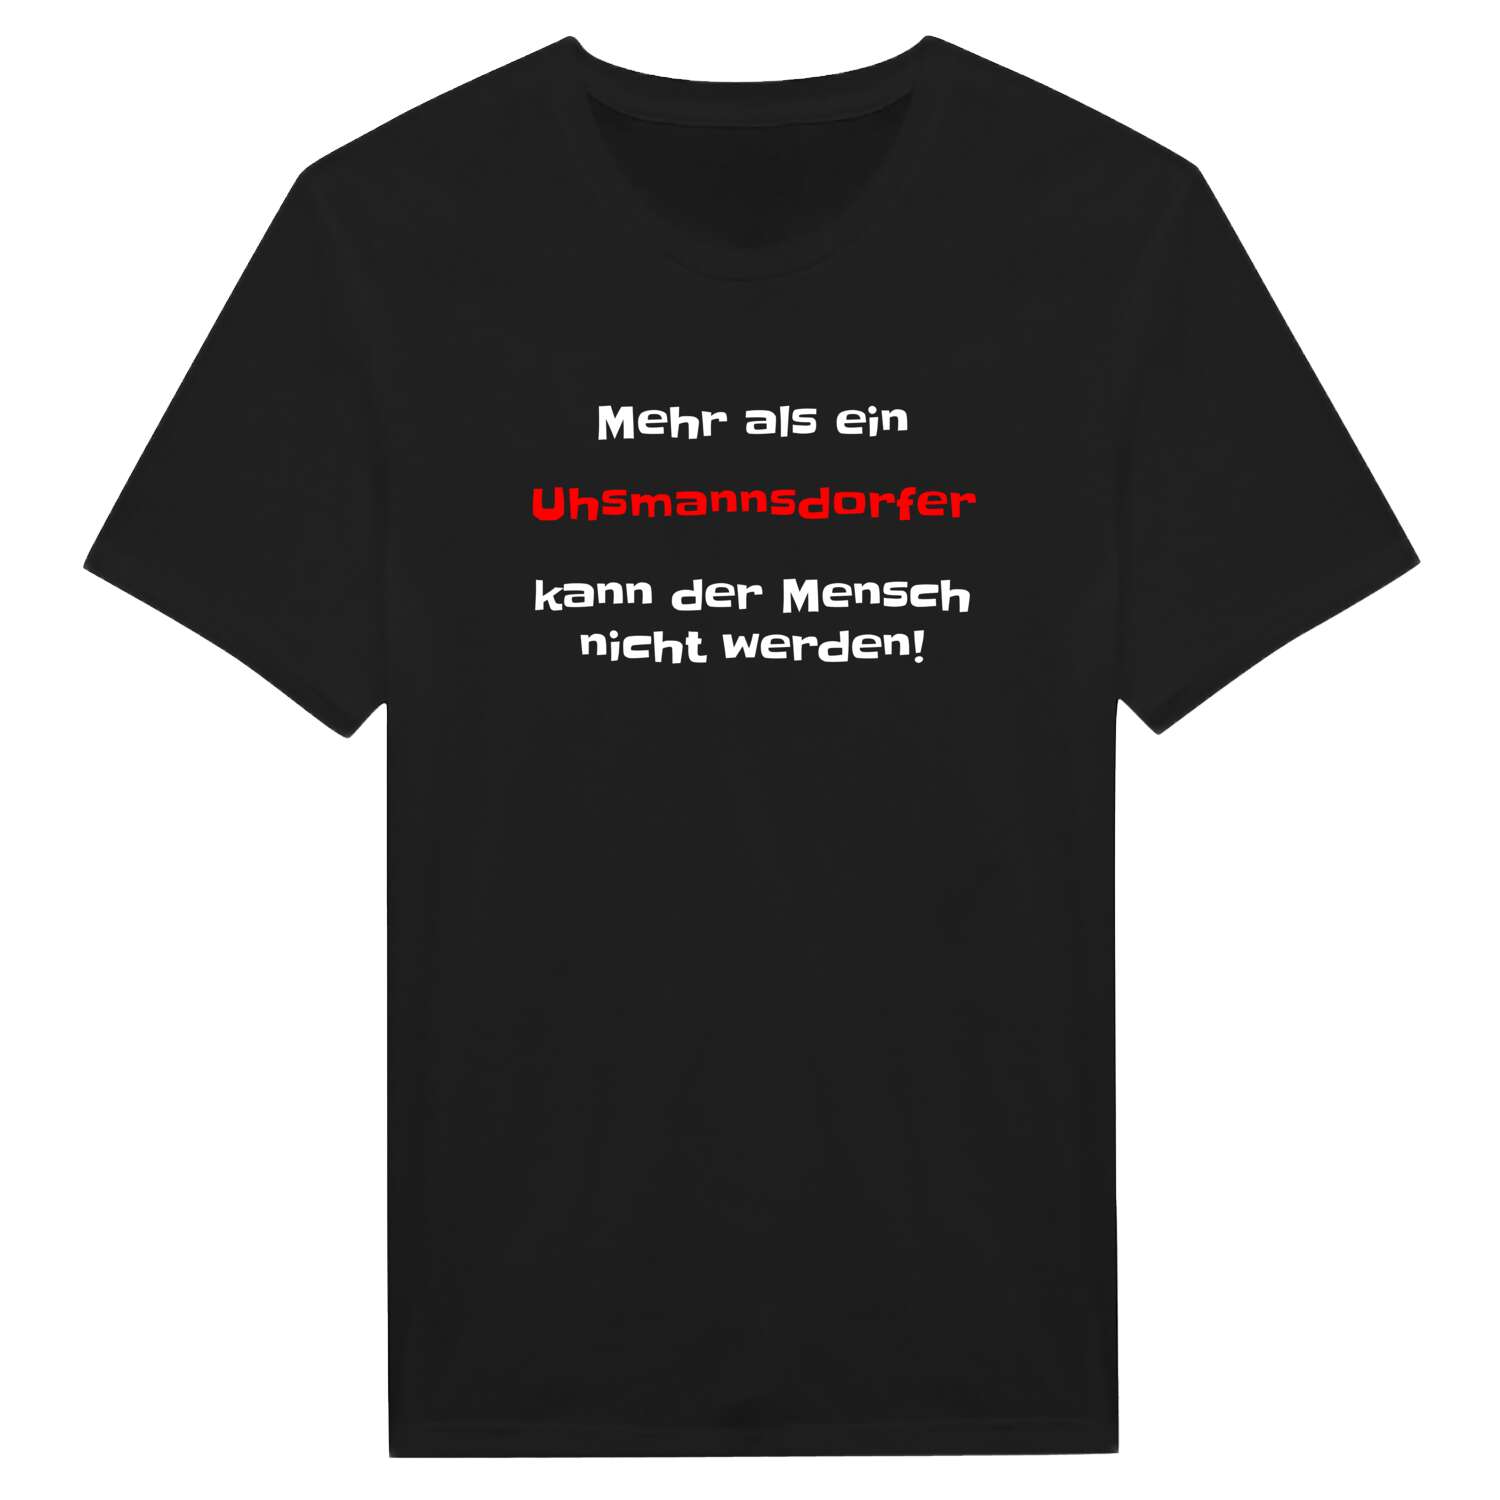 Uhsmannsdorf T-Shirt »Mehr als ein«